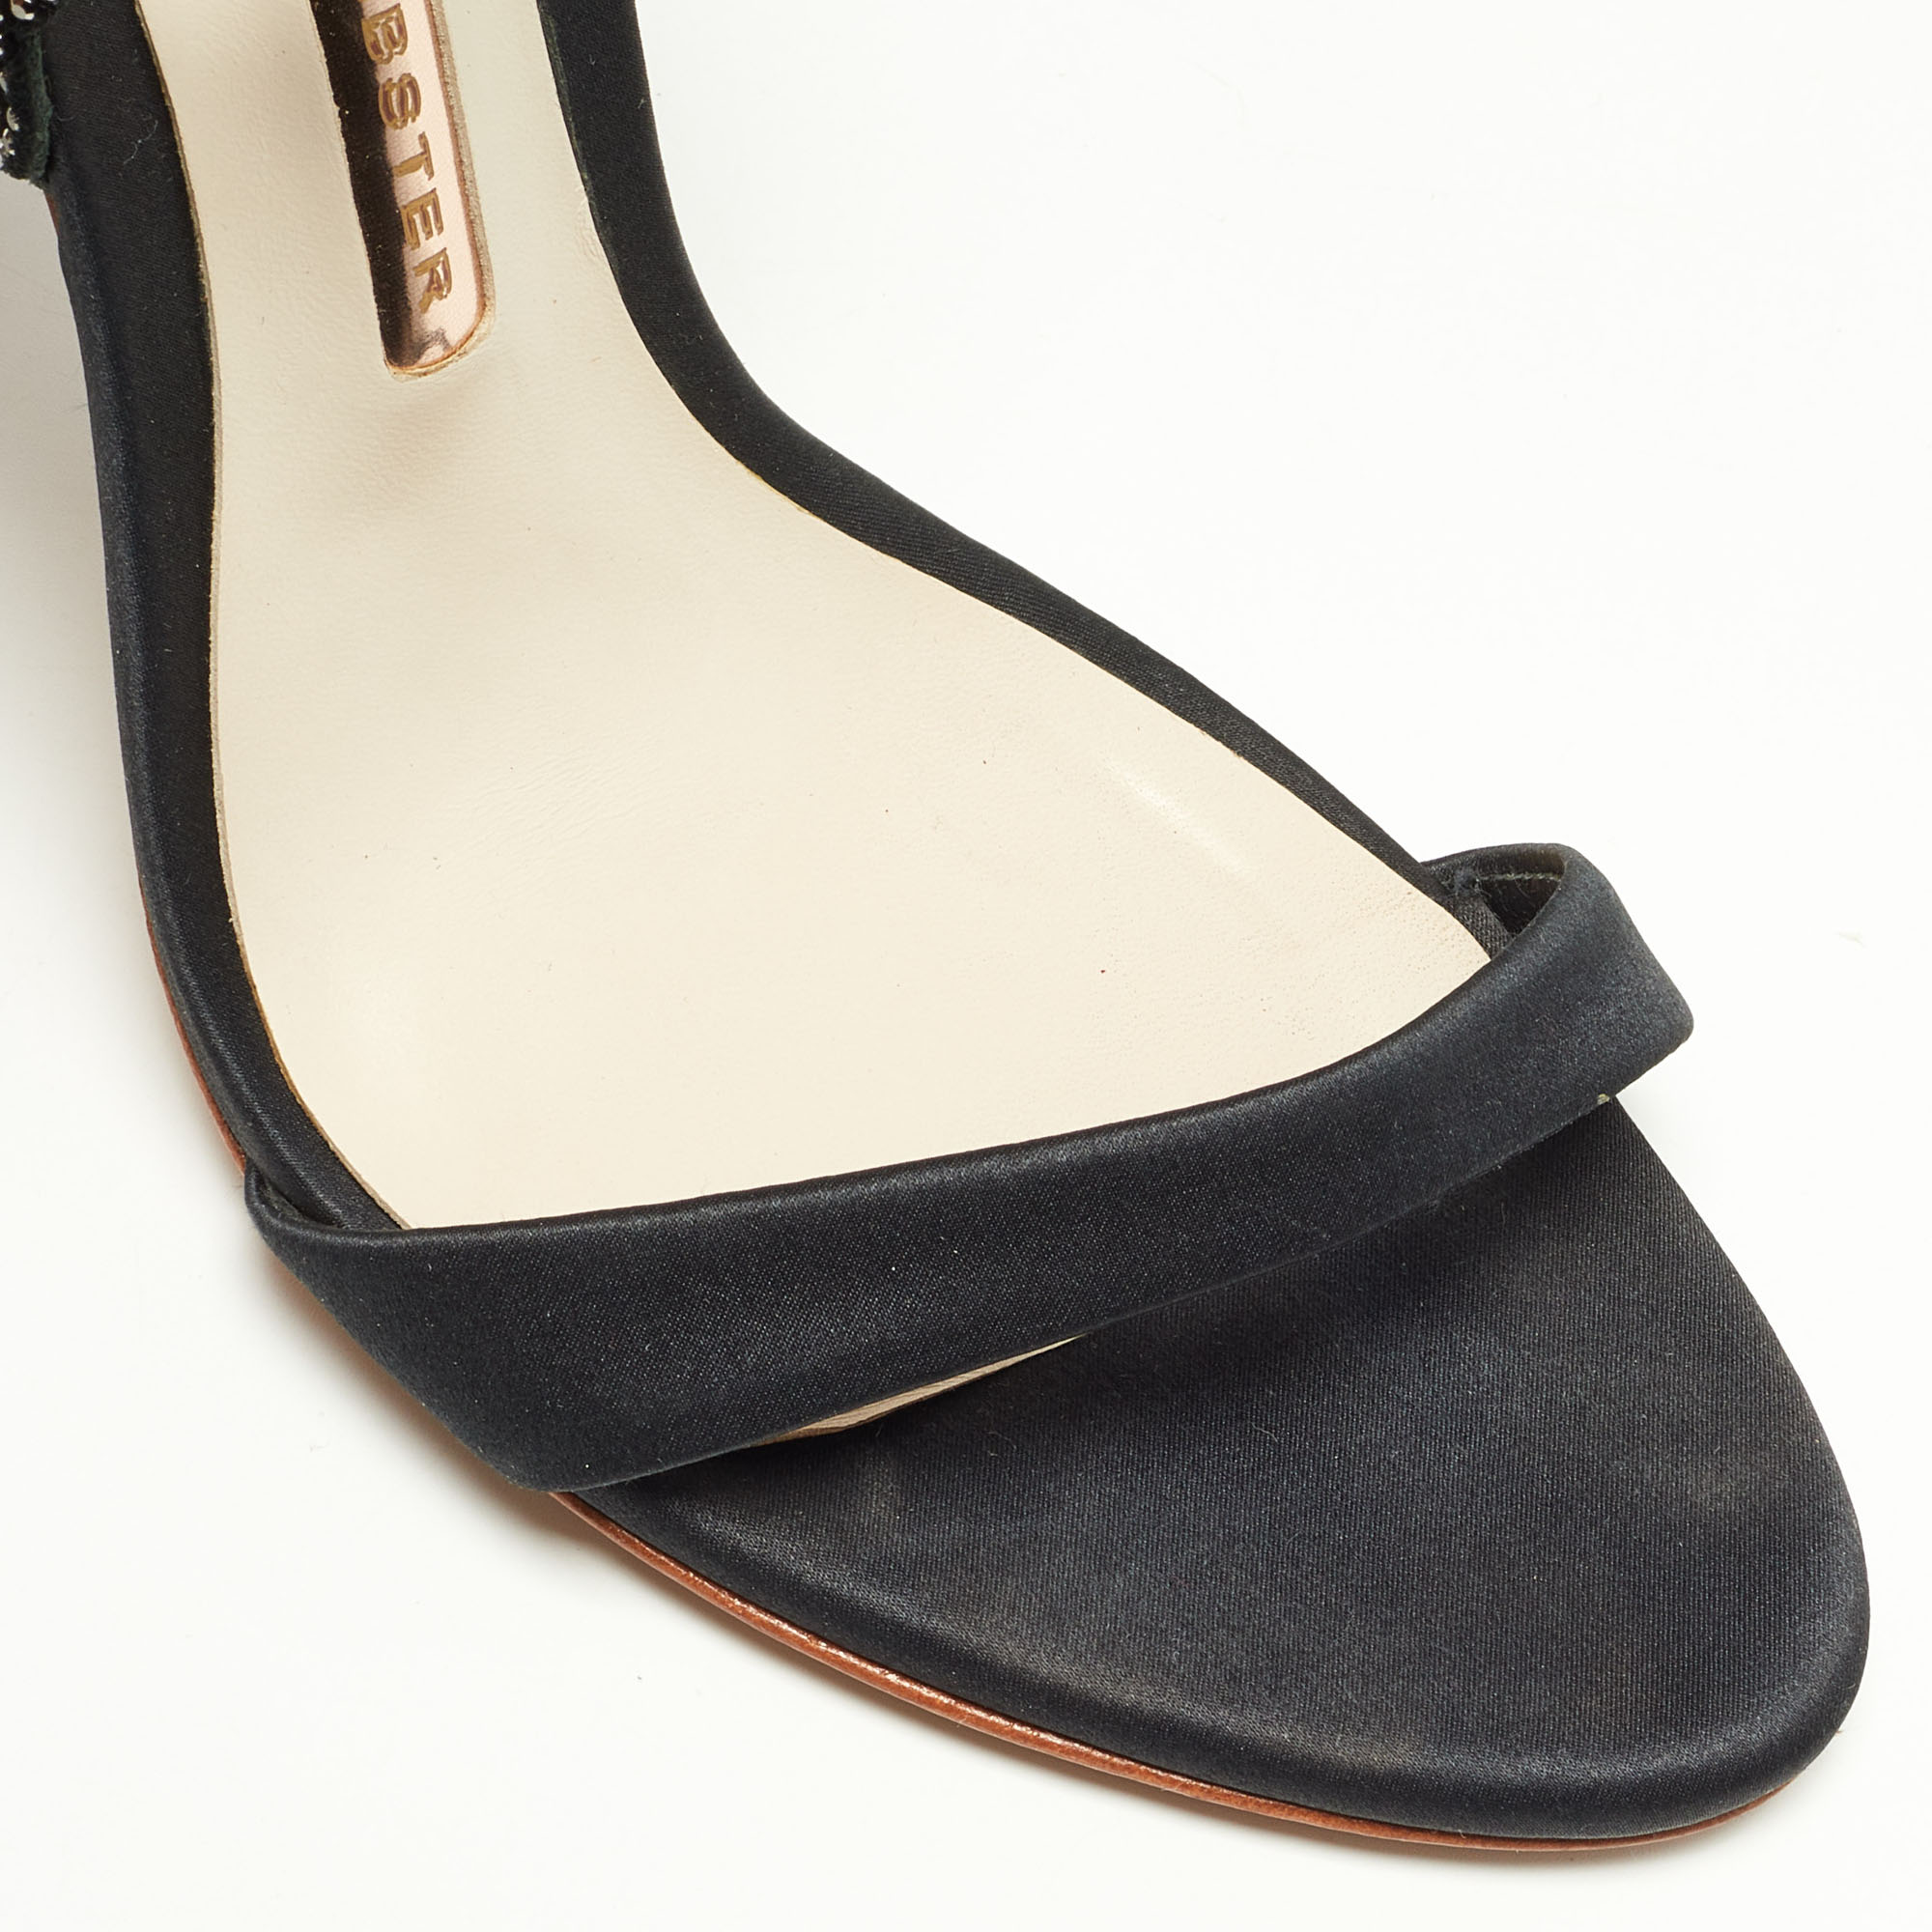 Sophia Webster Black Satin Crystal Embellished Evangeline Ankle Strap Sandals Size 36.5